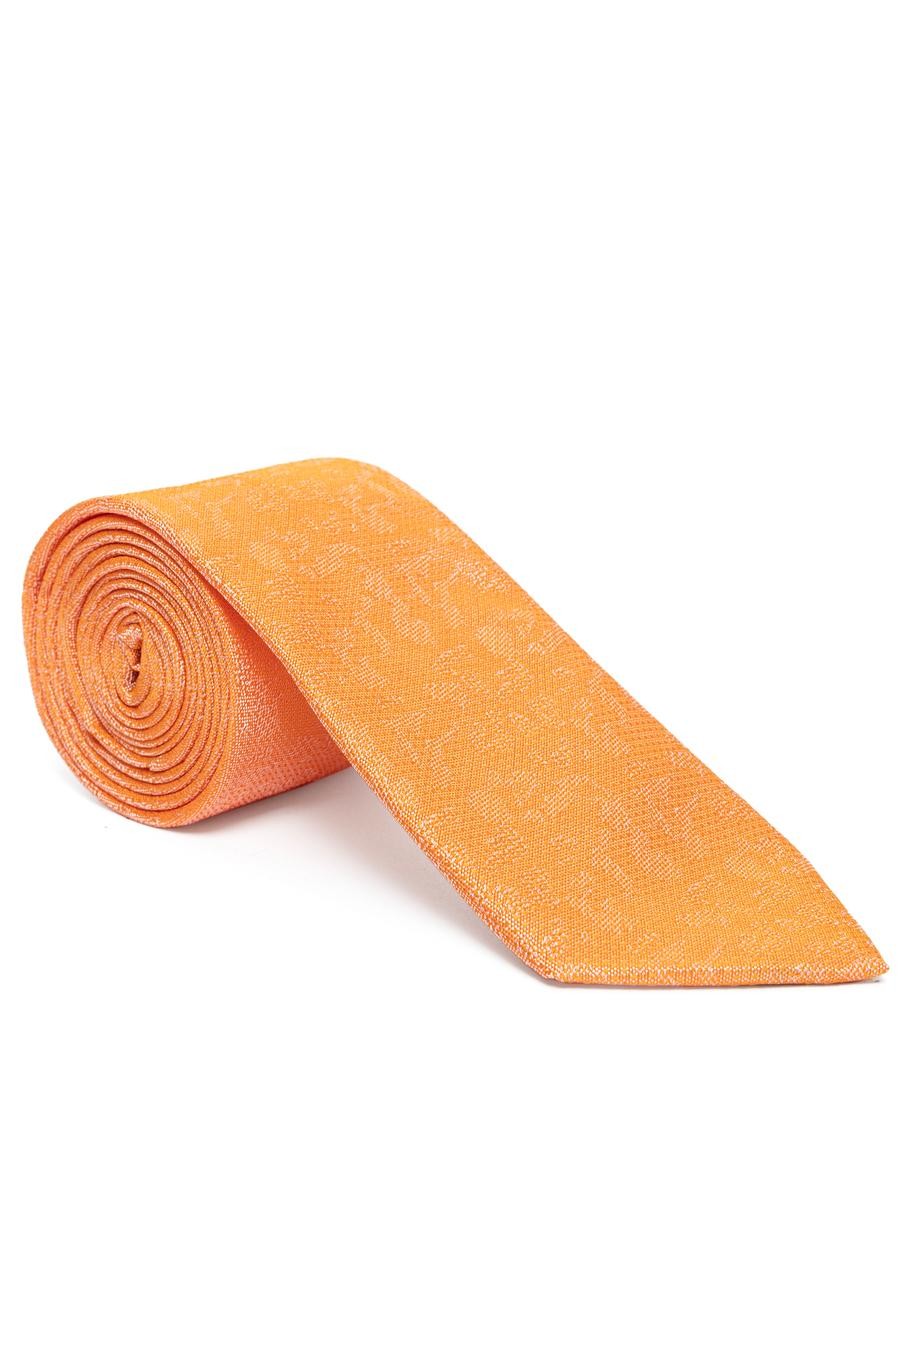 ست دستمال کراوات  نارنجی  استاندارد  مردانه  پیرکاردین